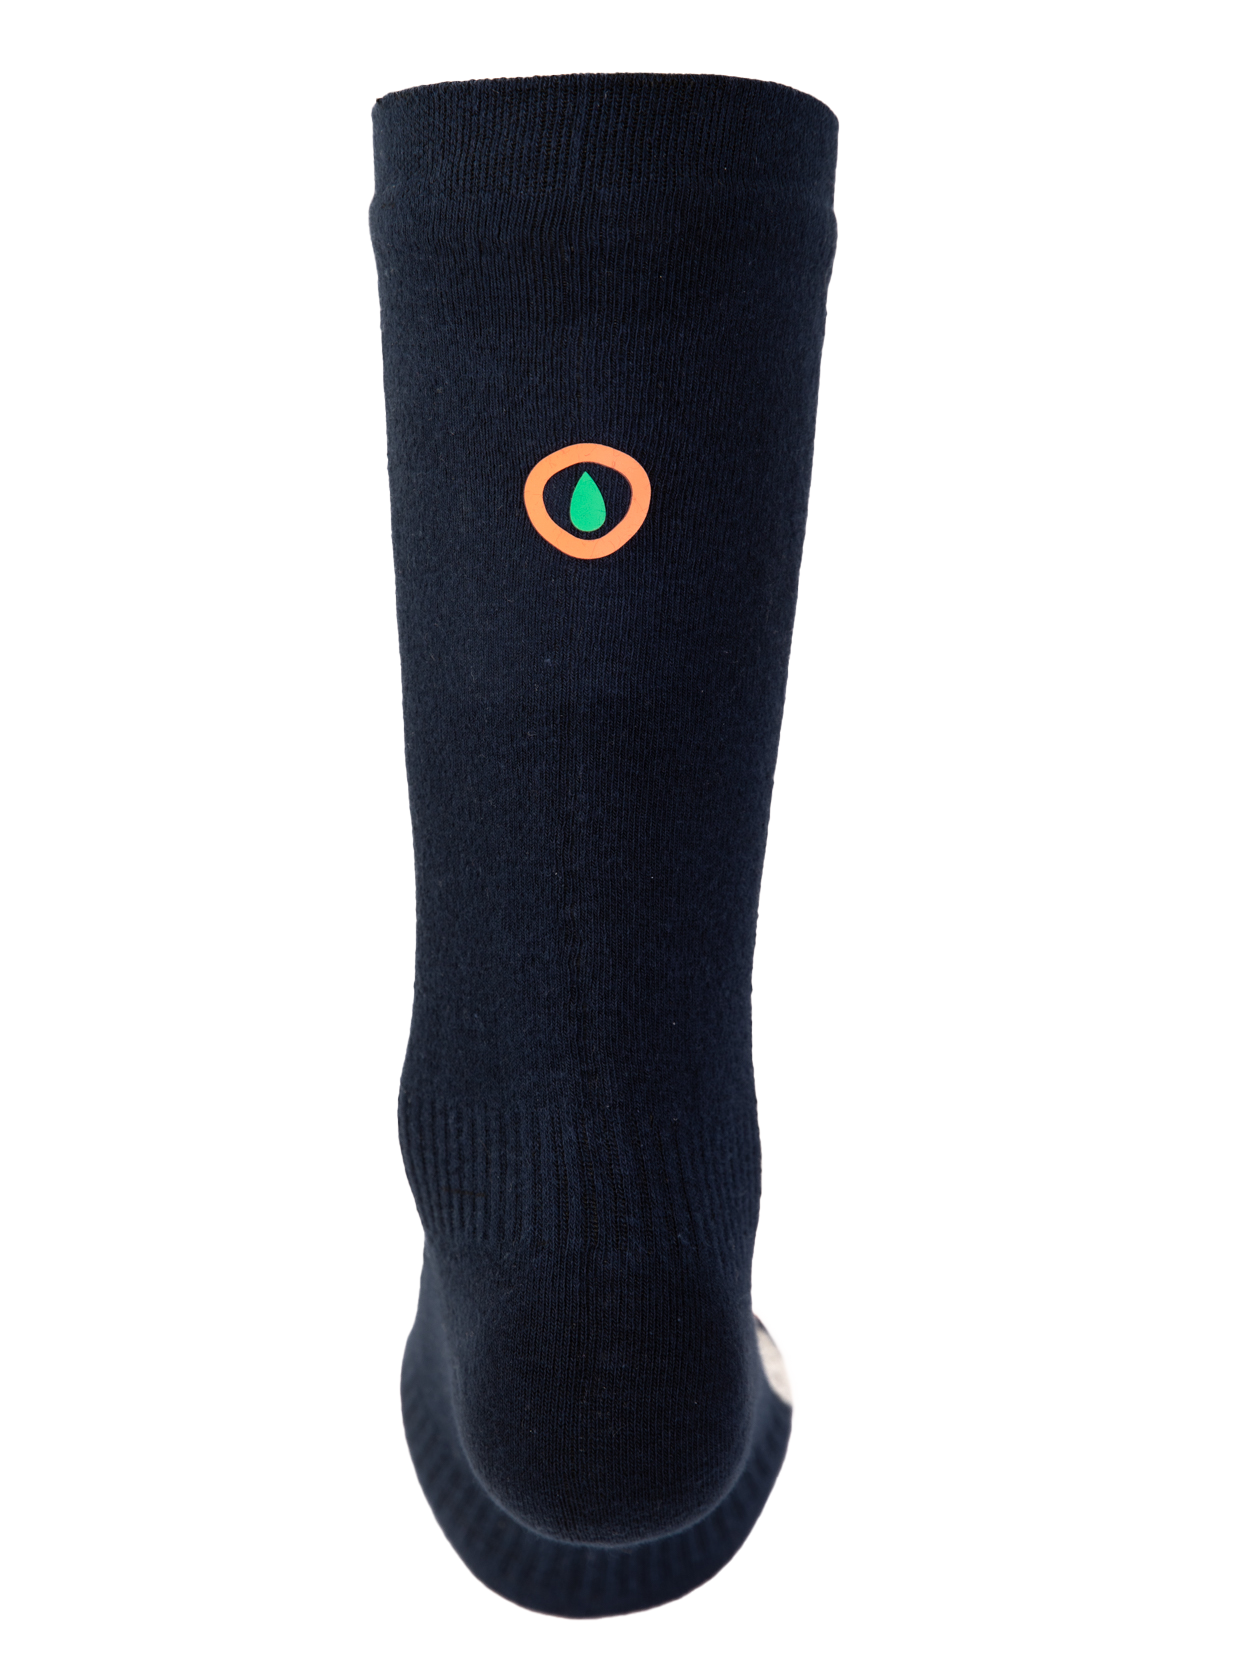 Calf Length Lightweight Waterproof Sock  | Lightweight